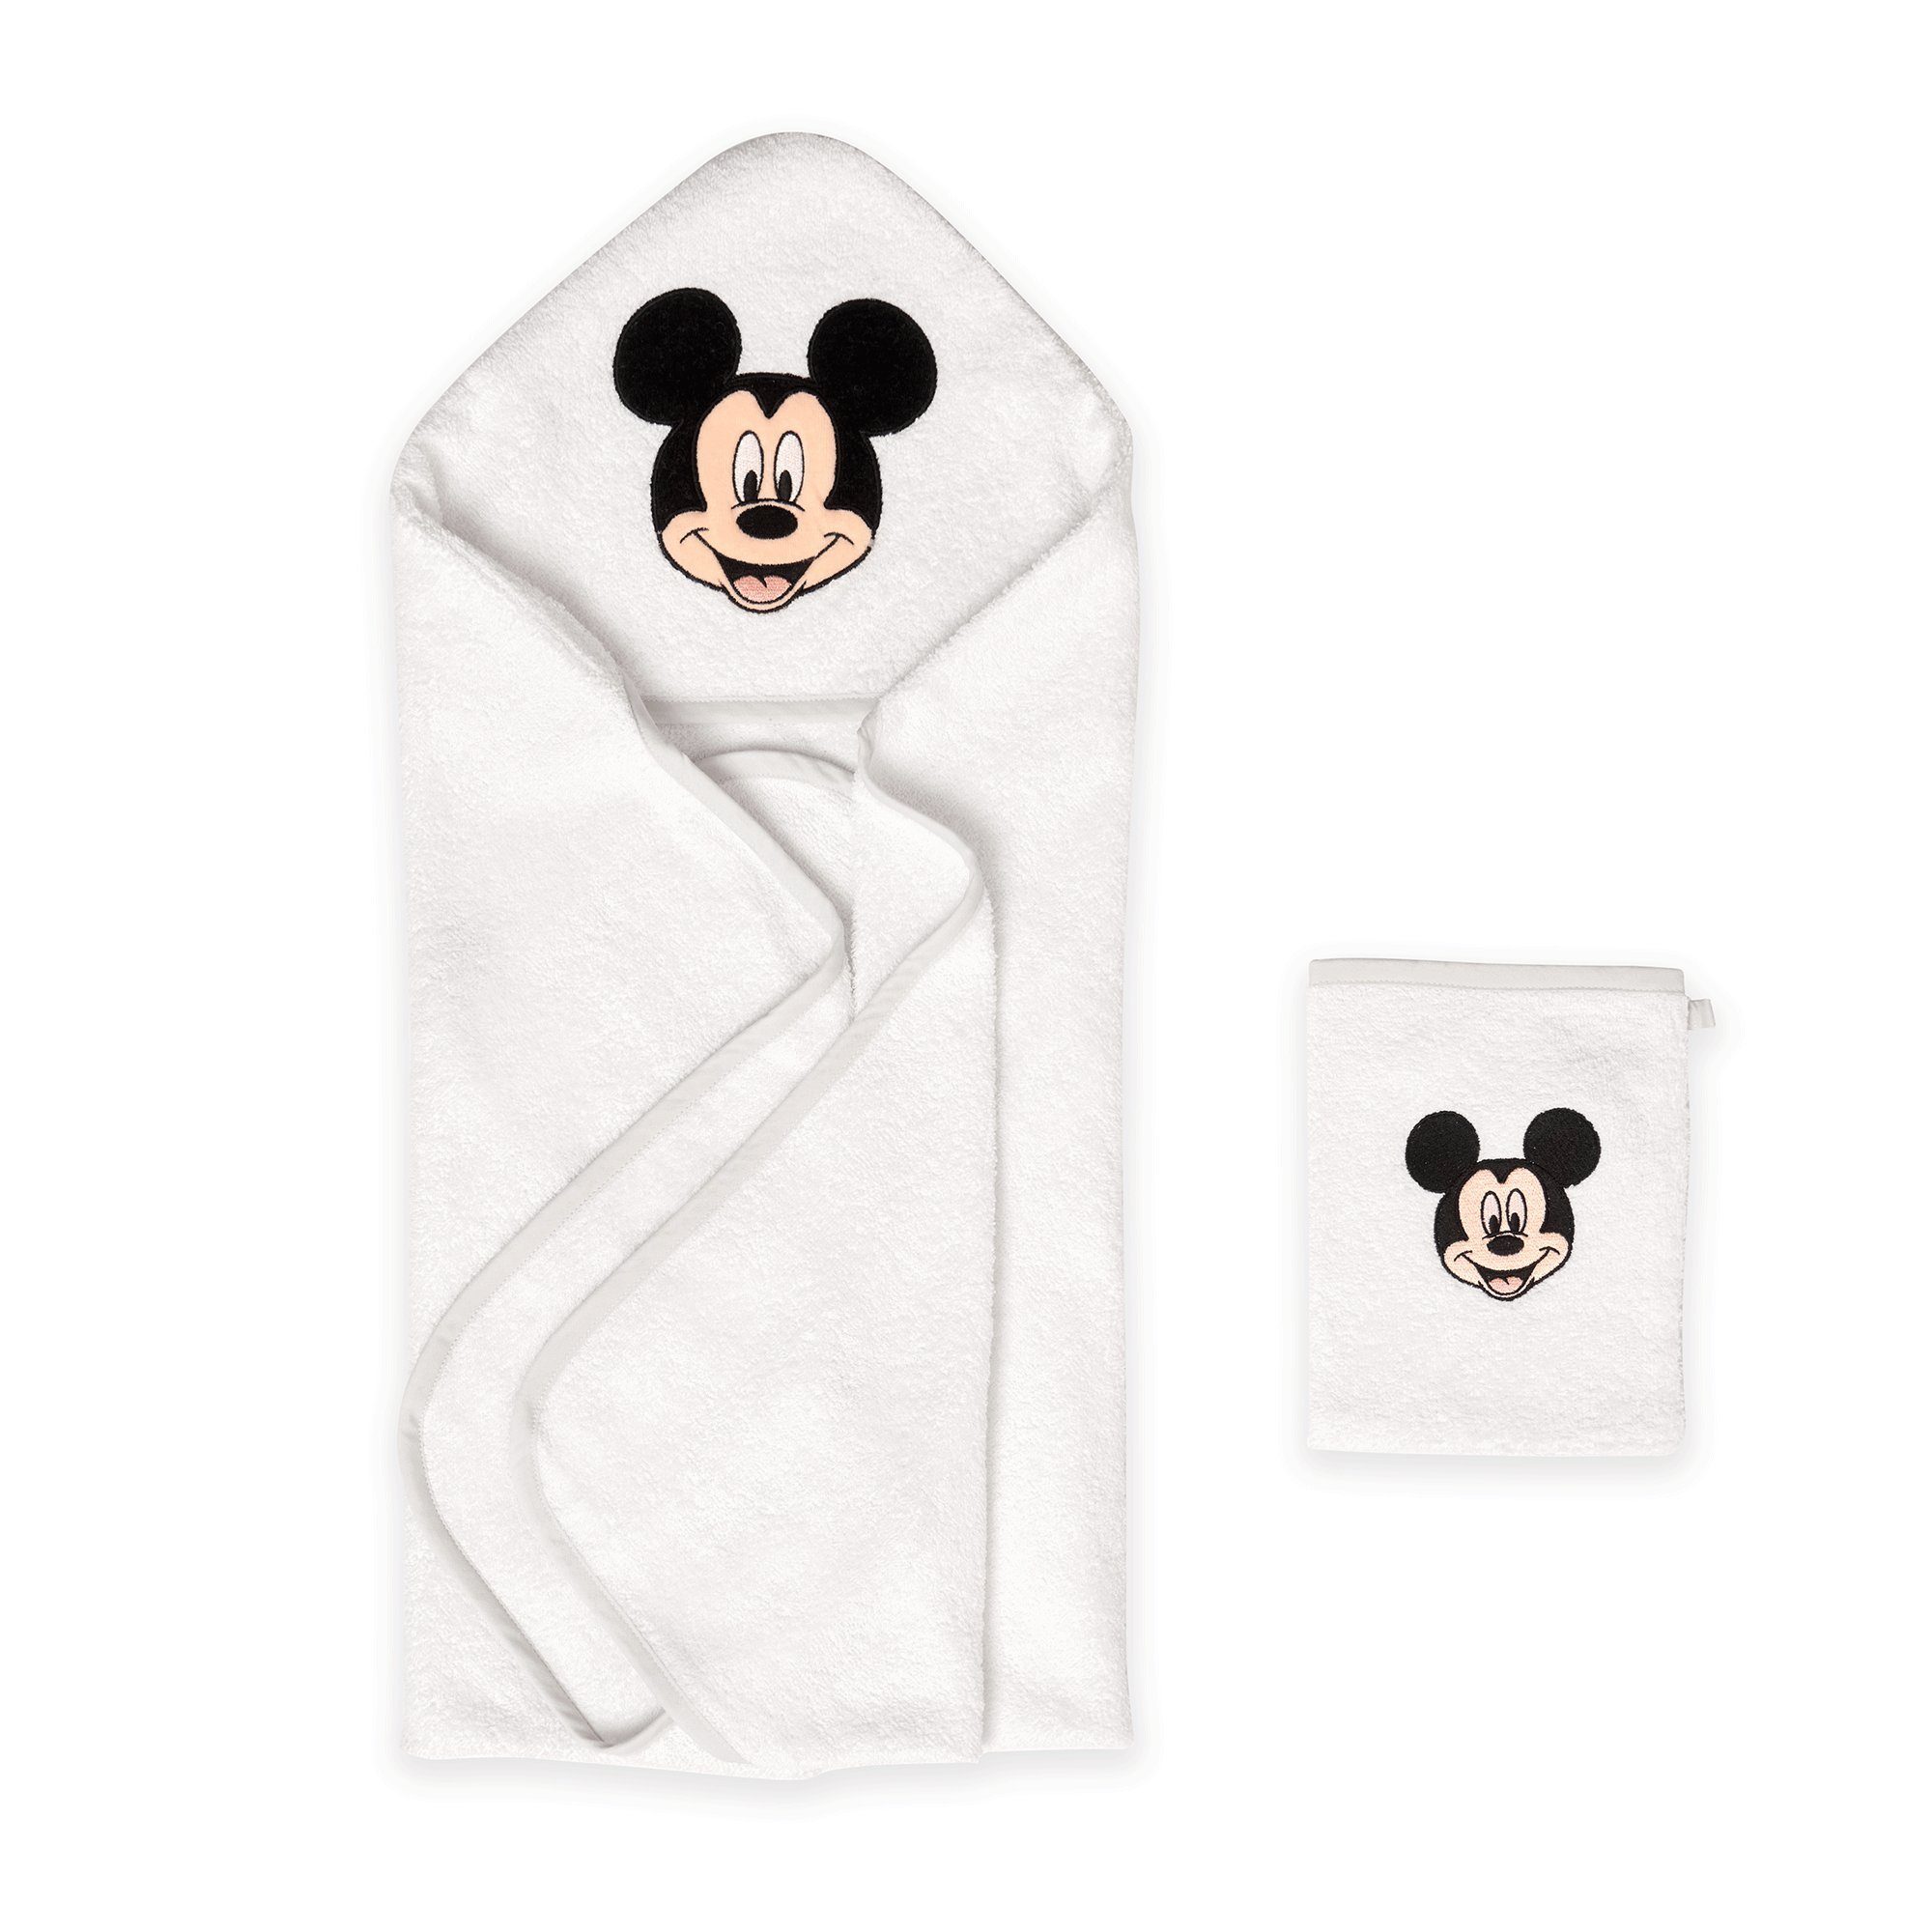 Disney Kapuzenhandtuch Disney Kapuzenhandtuch 2-teiling, Mickey mit Set, Baumwolle, Waschlappen Kapuzenhandtuch Baby 100